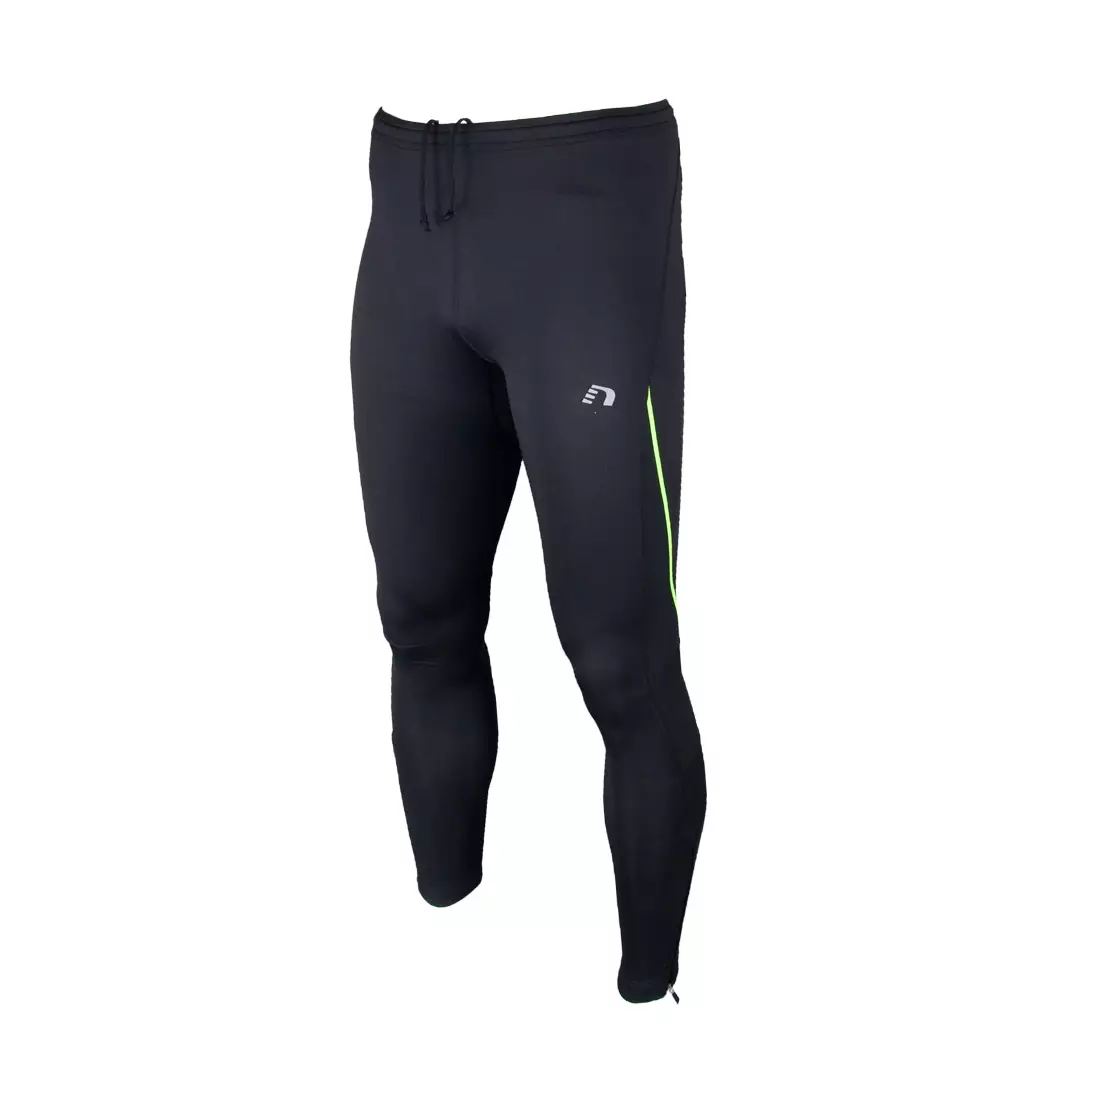 NEWLINE - lehké běžecké kalhoty, nezateplené 81441-060